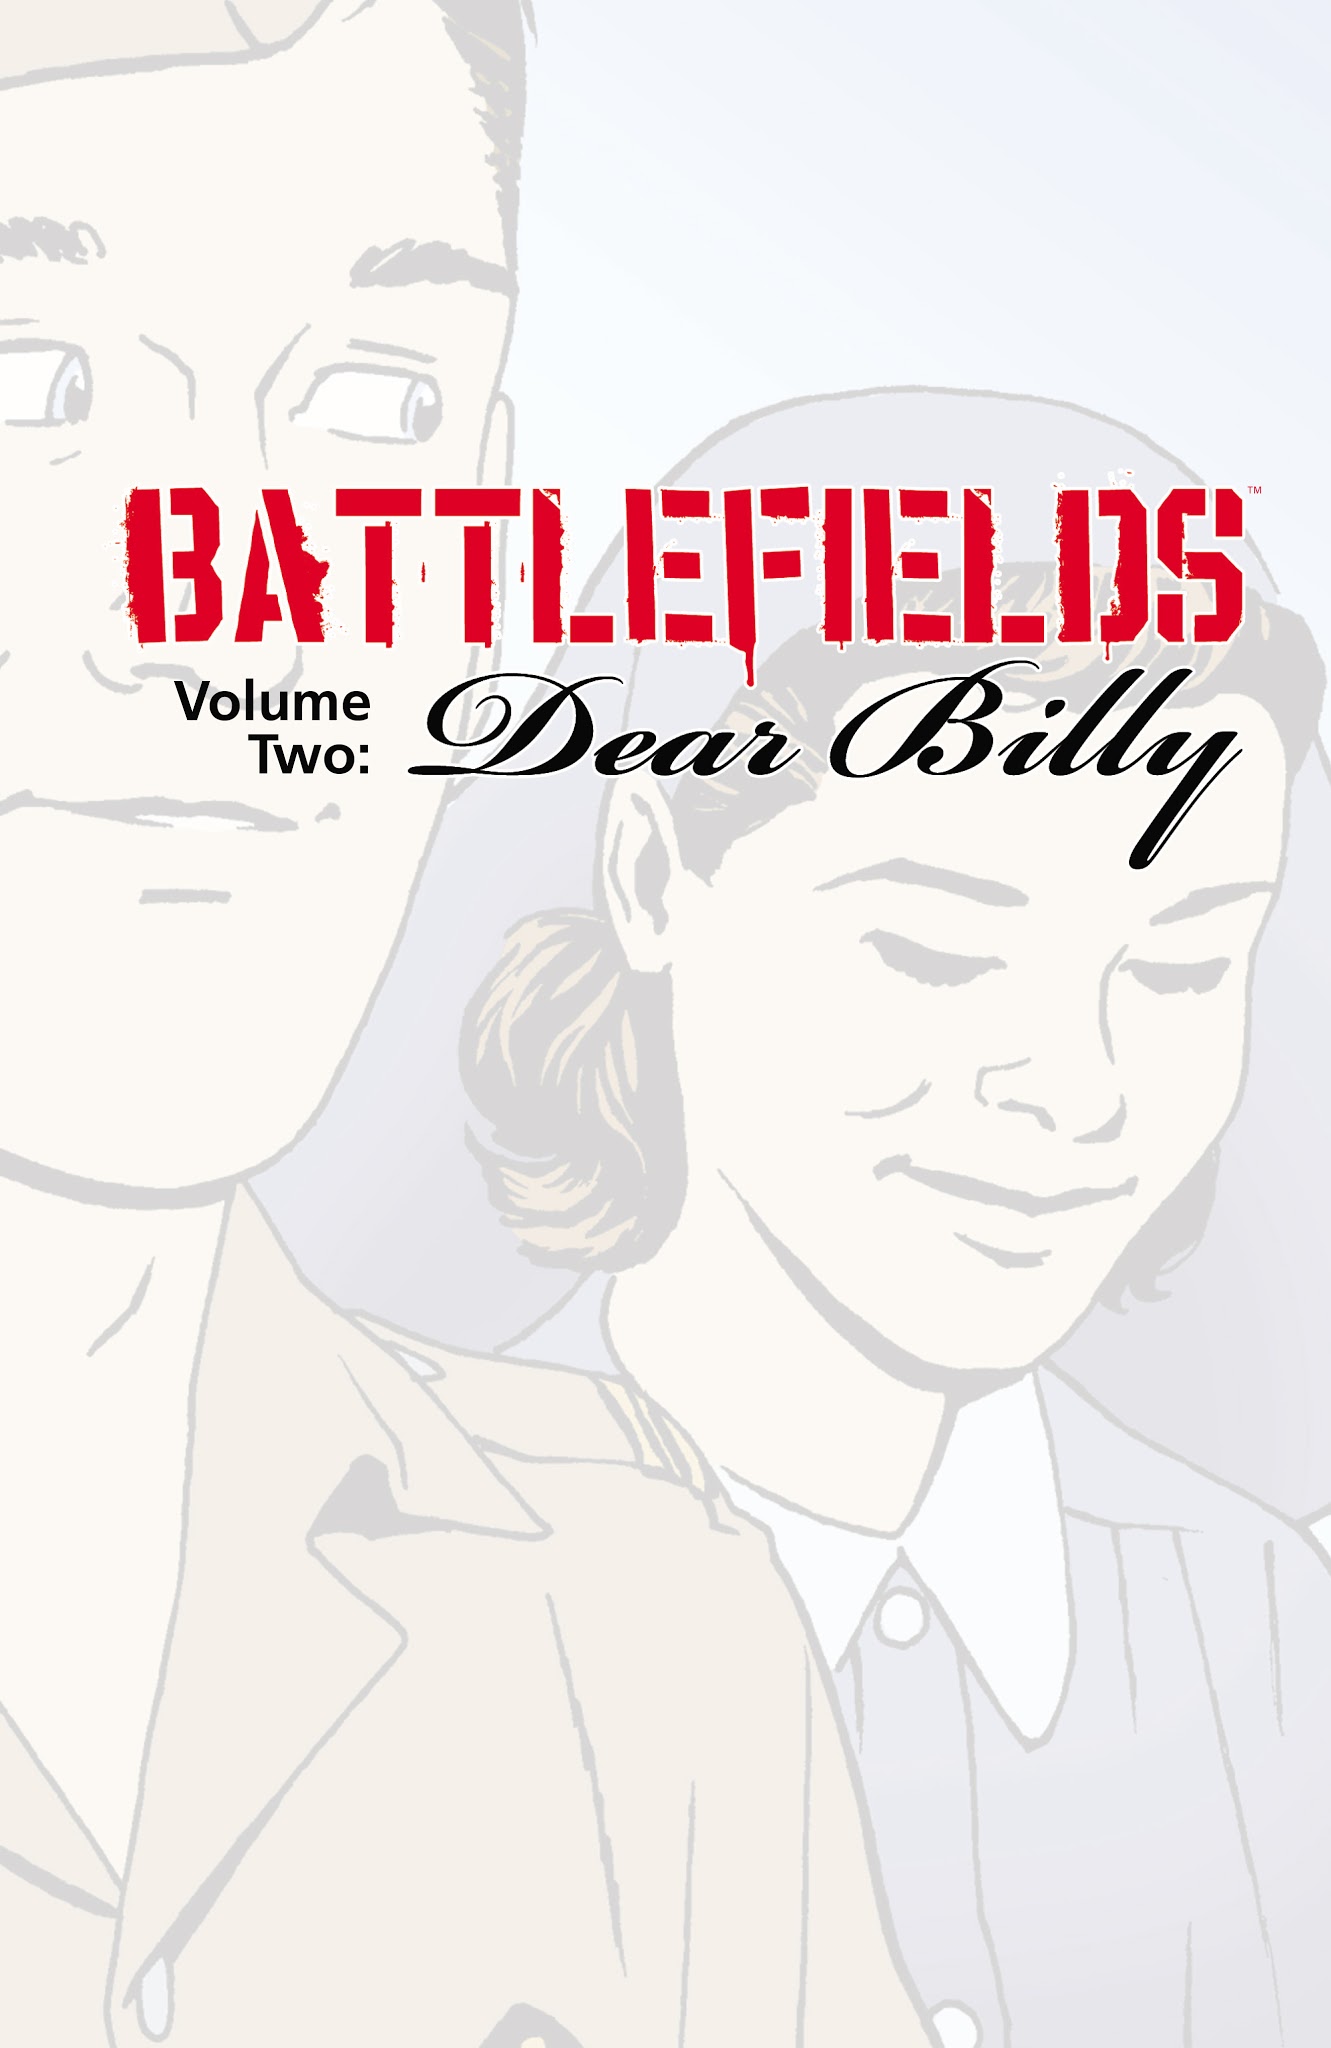 Read online Battlefields: Dear Billy comic -  Issue # TPB - 2